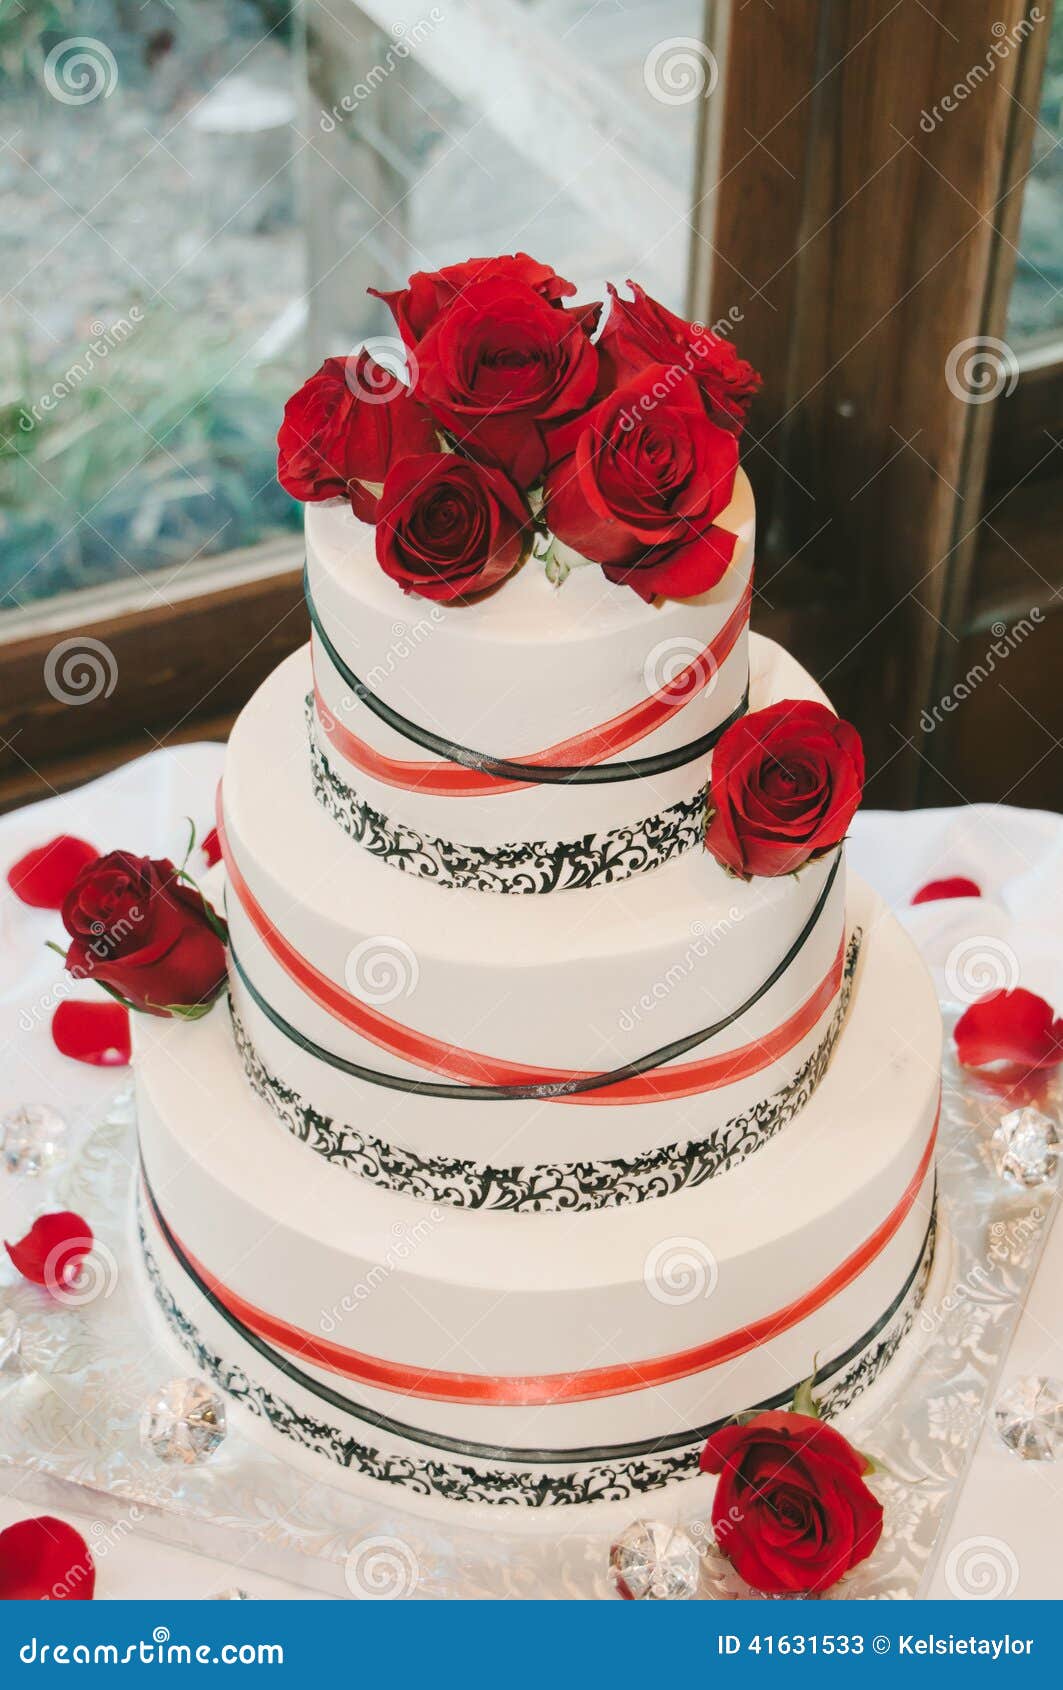 Red Rose Wedding Cake Stock Image Image Of Black Real 41631533